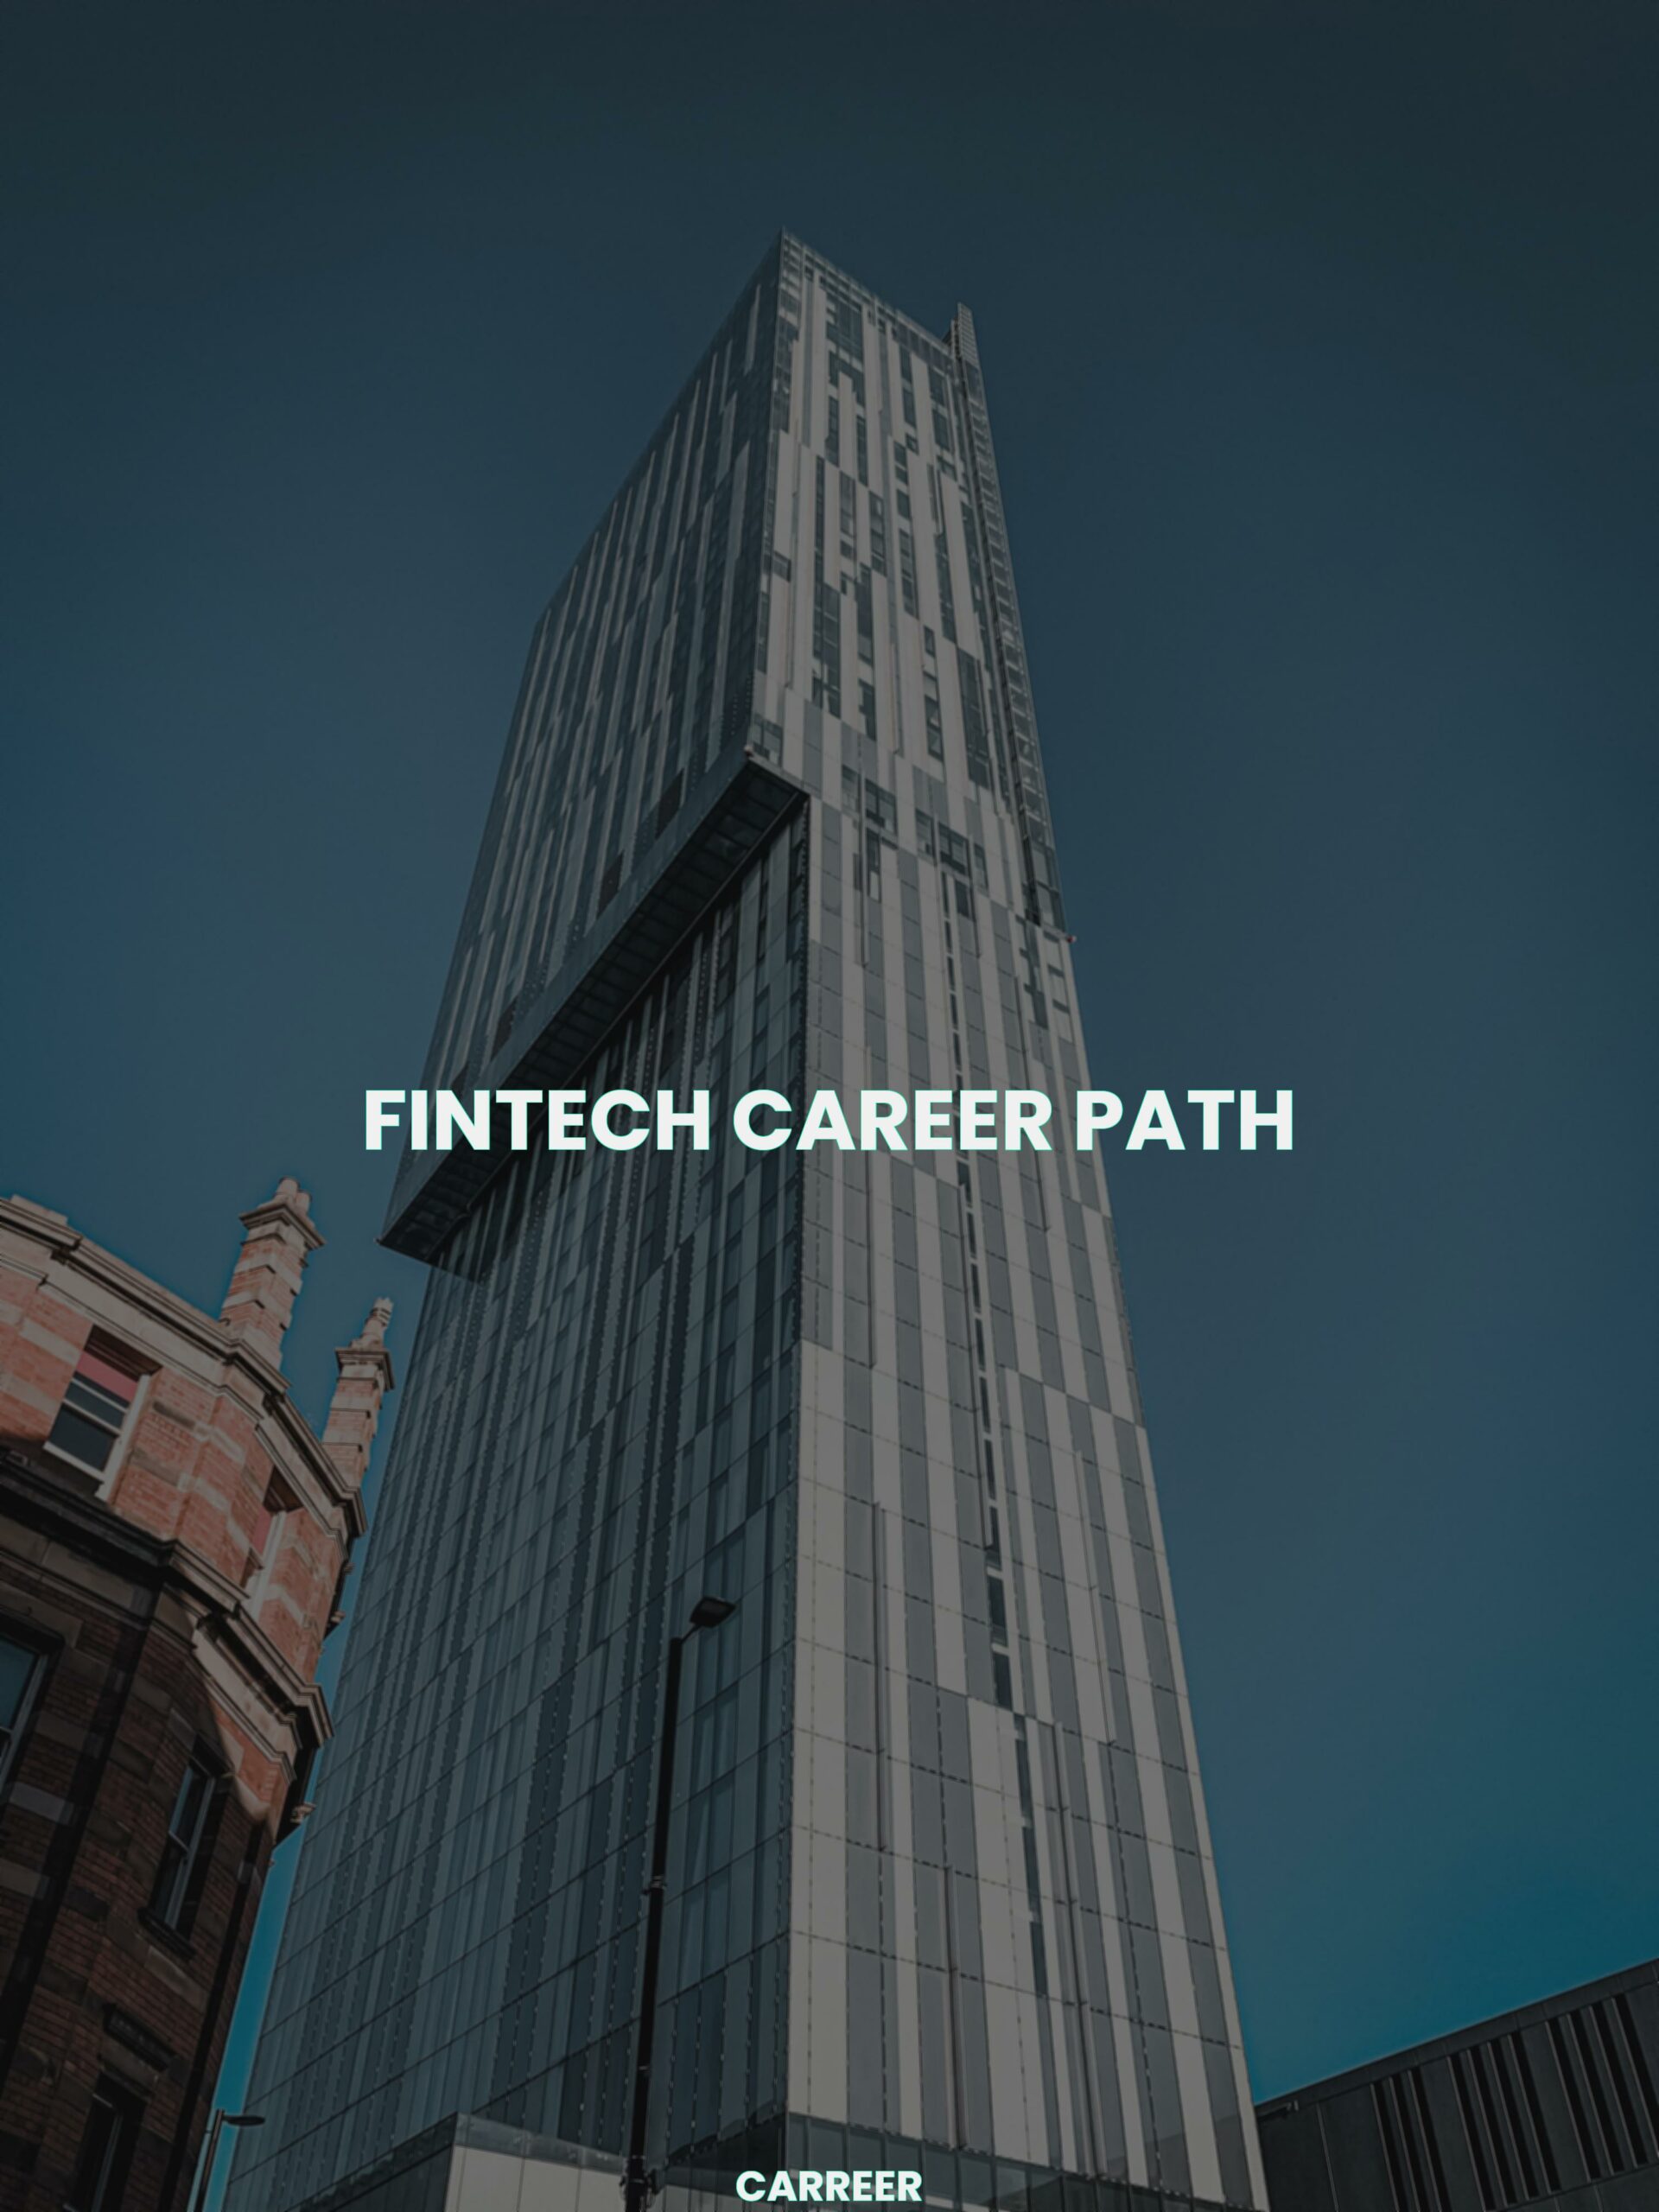 Fintech career path